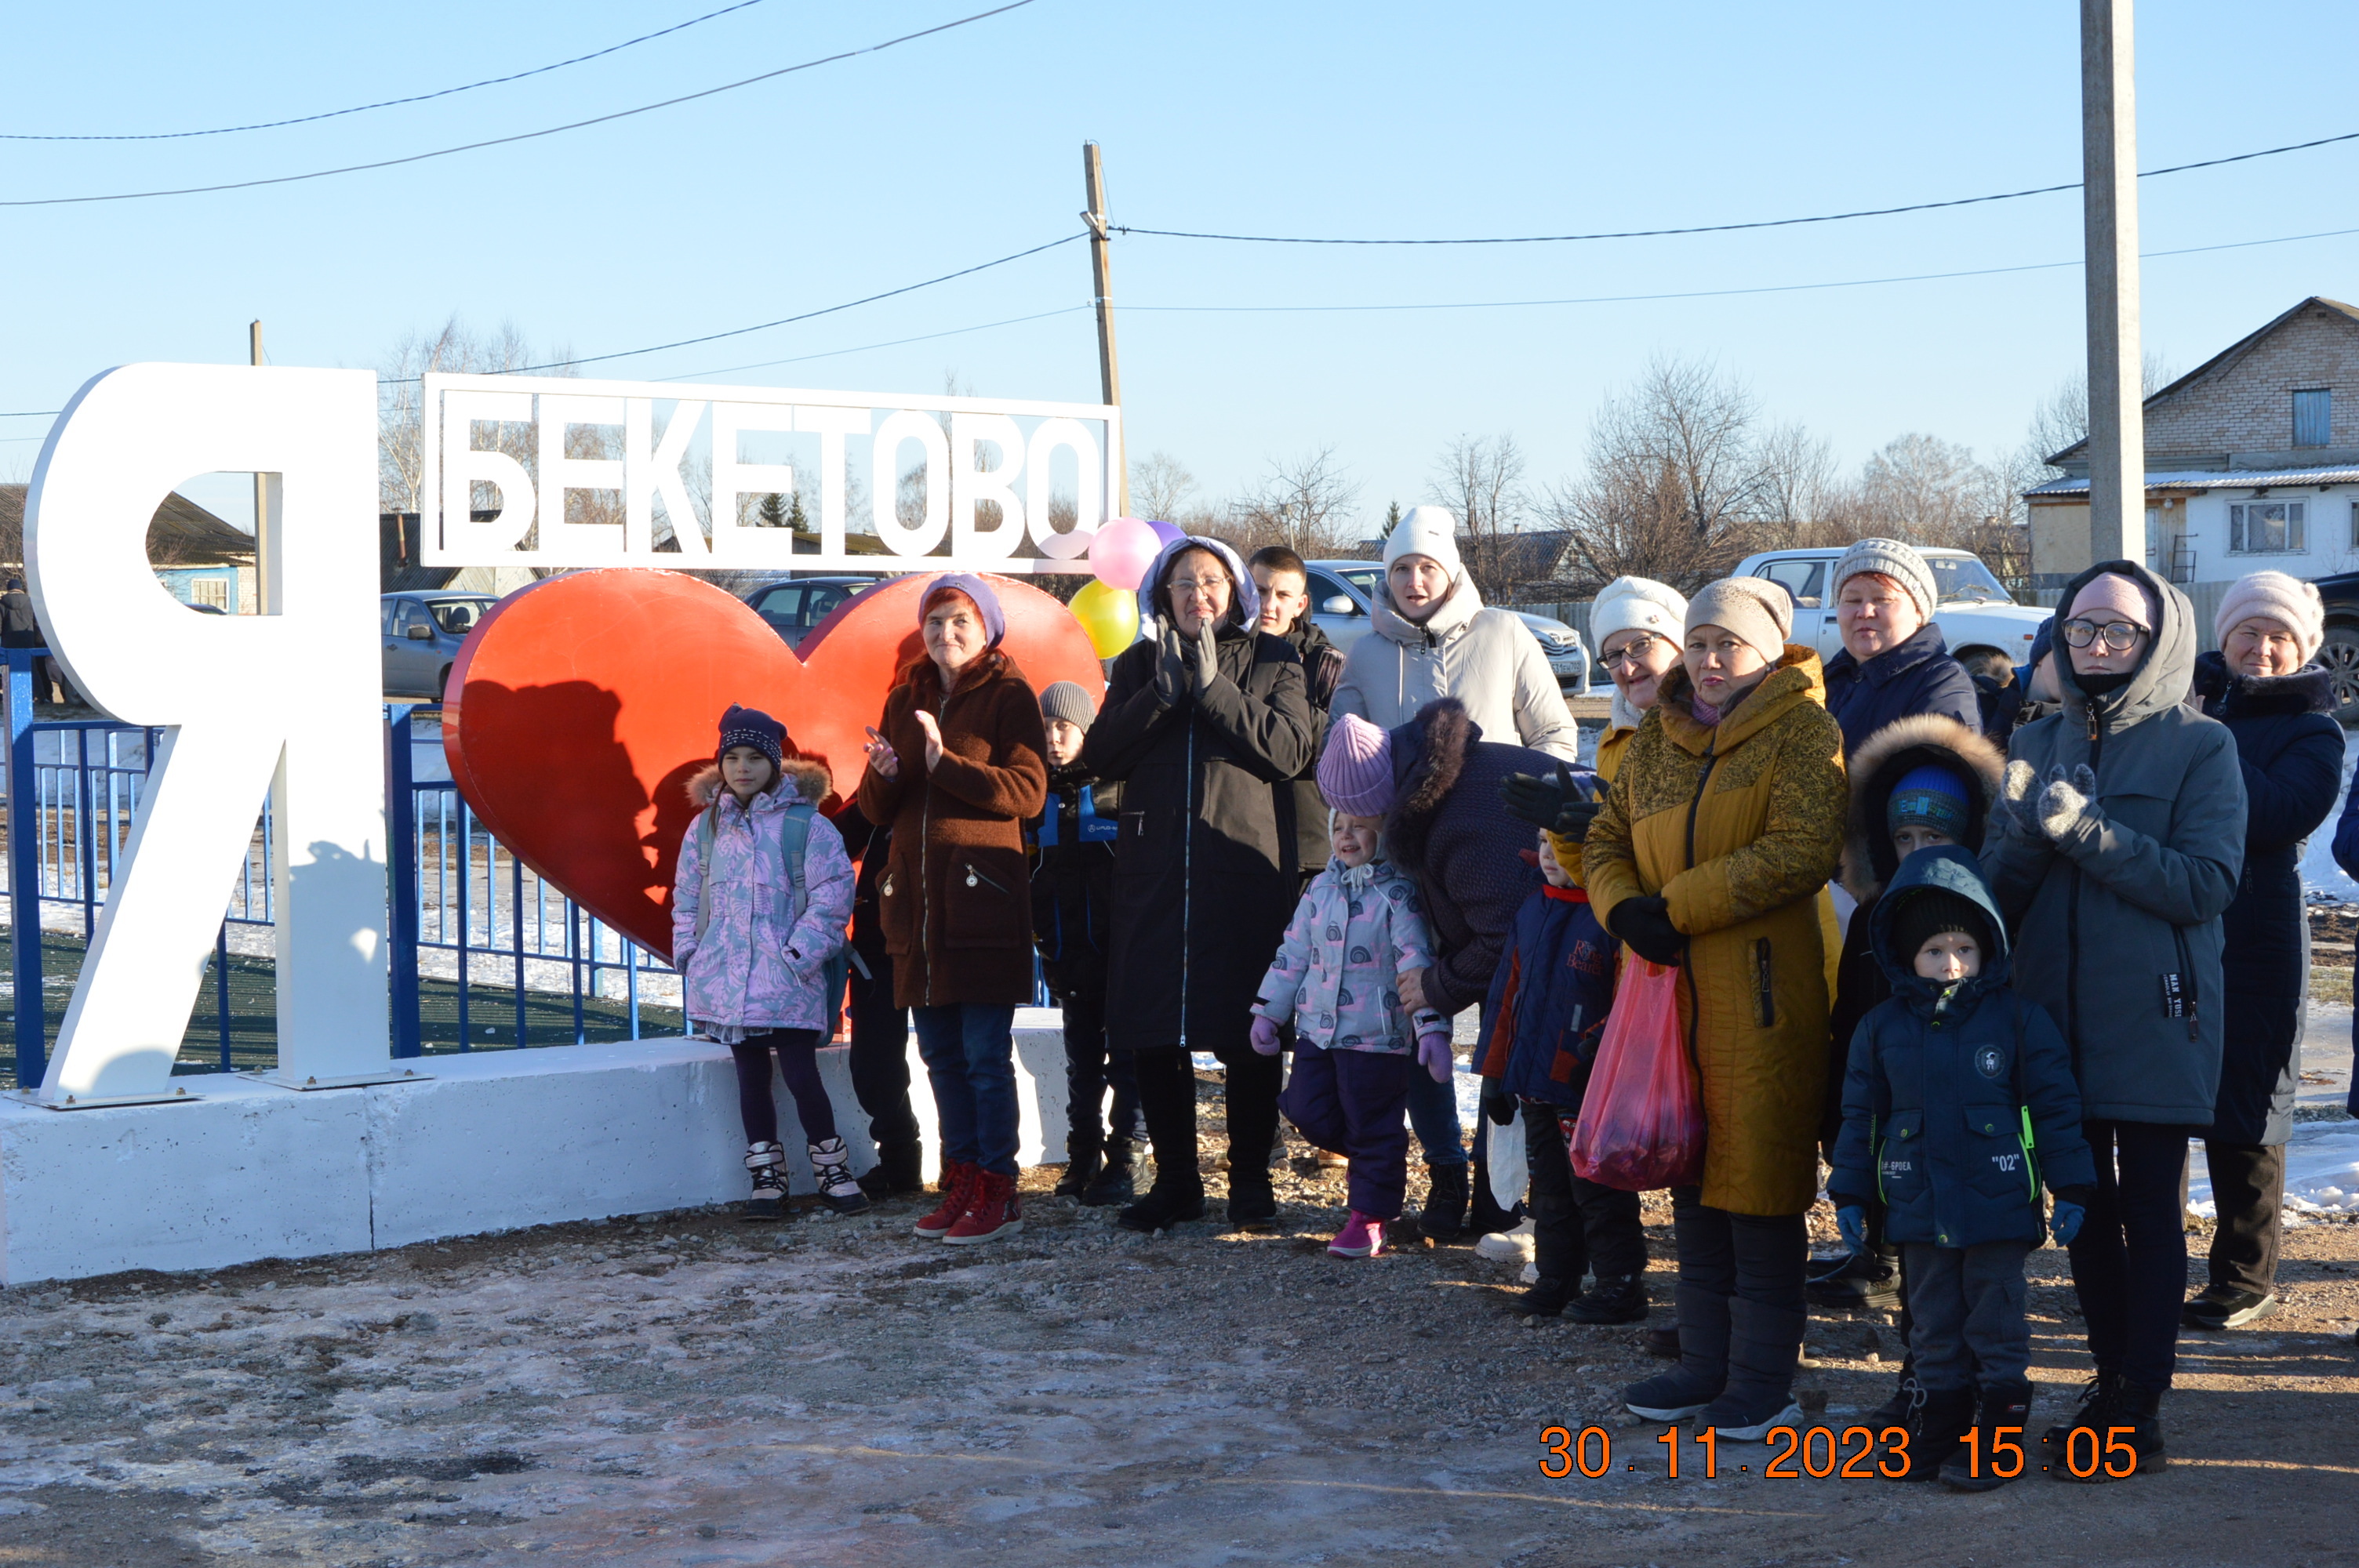 В селе Бекетово Ермекеевского района состоялось торжественное открытие детско-спортивной площадки.